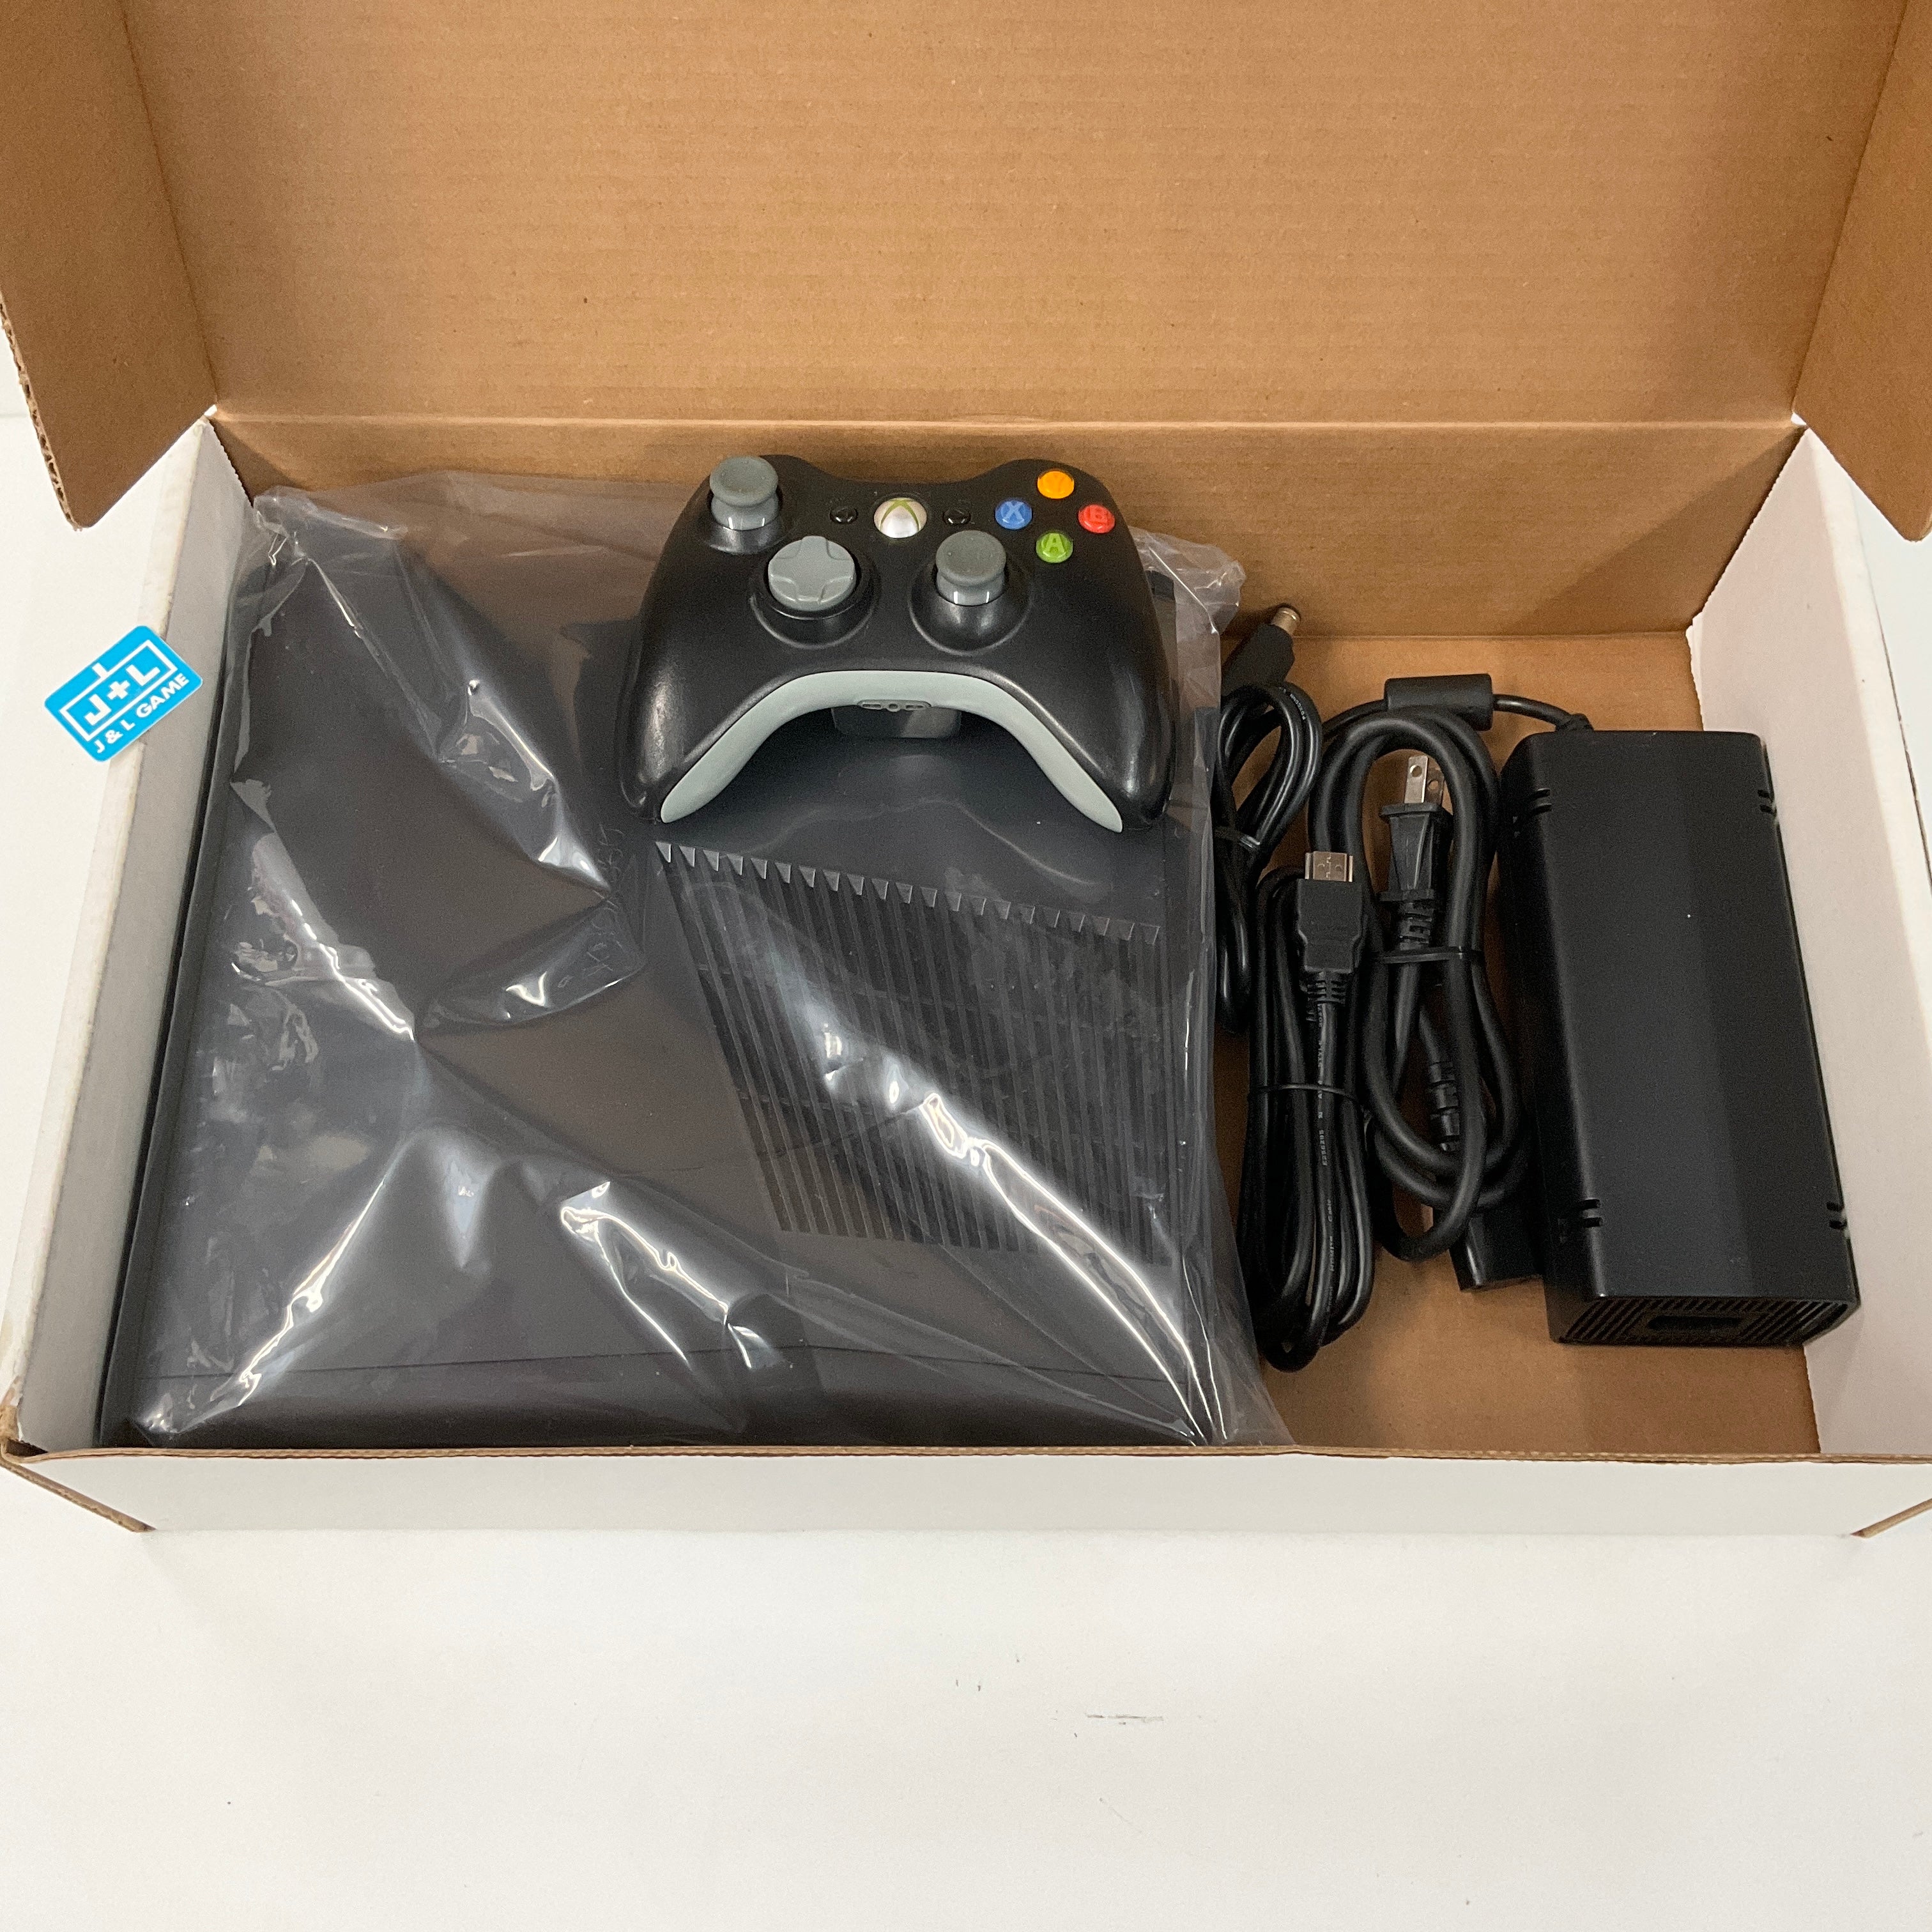 Microsoft Xbox 360 Slim Console (250 GB) - Xbox 360 [Pre-Owned] Consoles Microsoft   